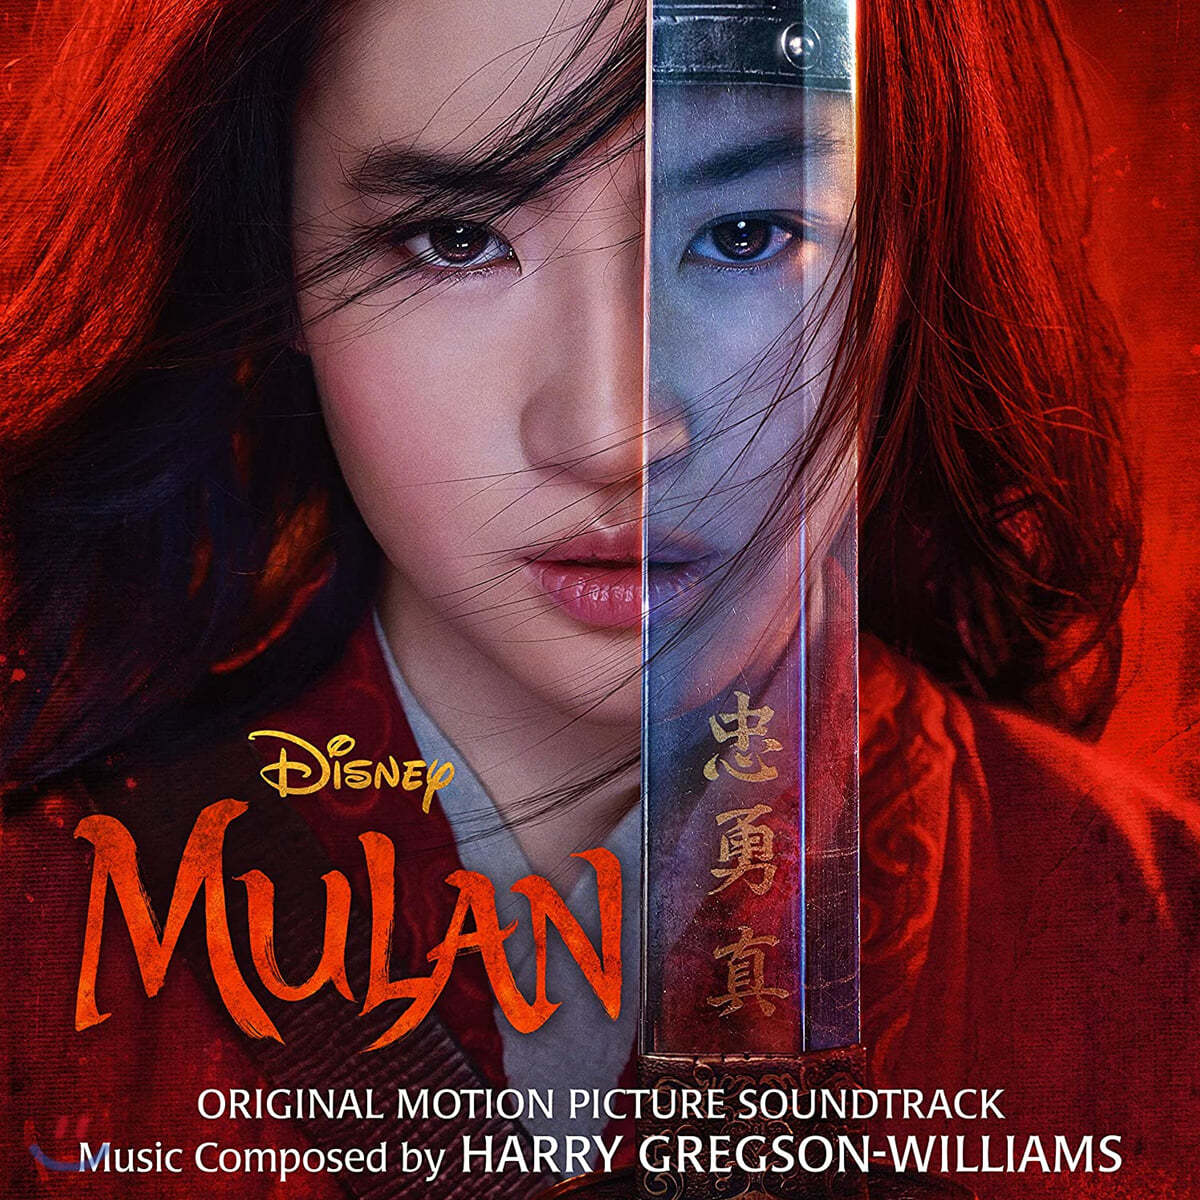 뮬란 영화음악 (Mulan OST by Harry Gregson-Williams)